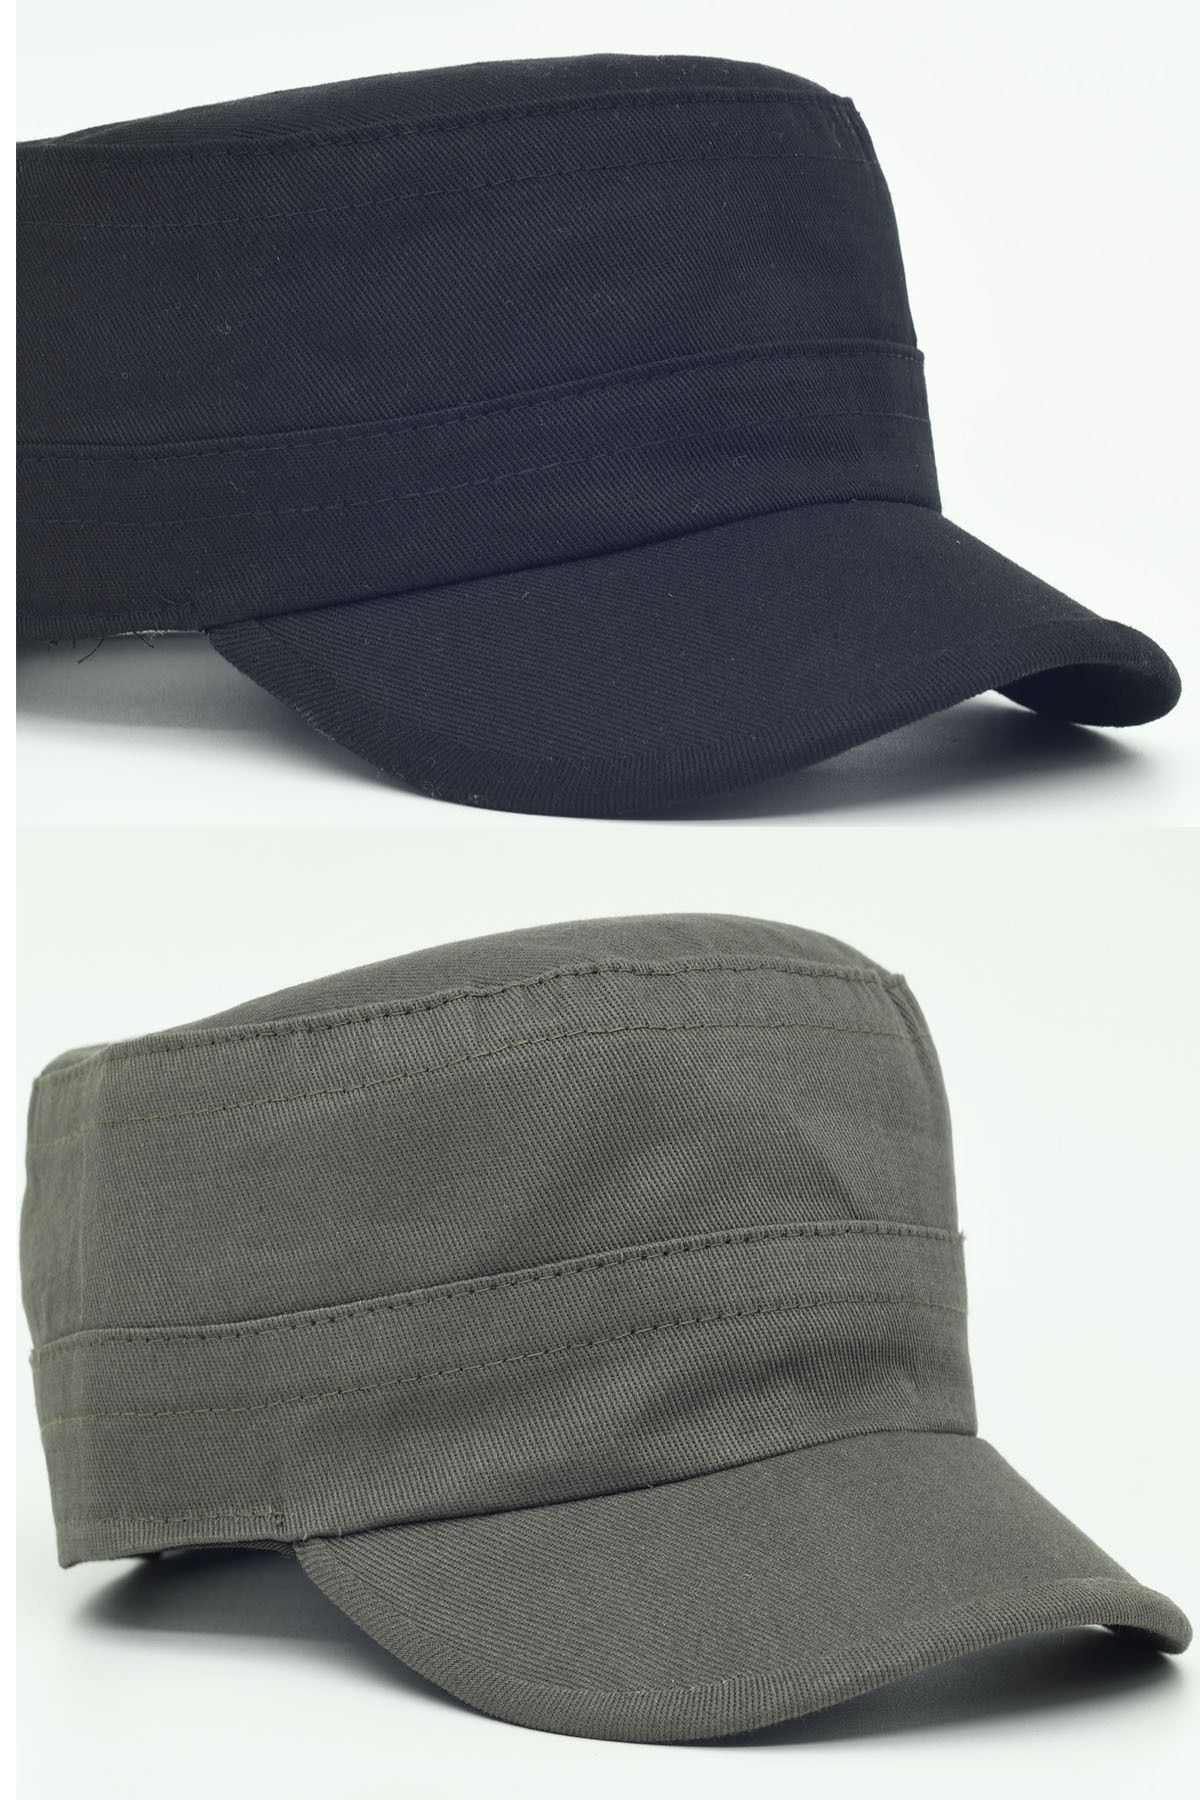 şapkadan Castro Siyah Ve Haki Şapka Ikili Set Kastro Set Unisex